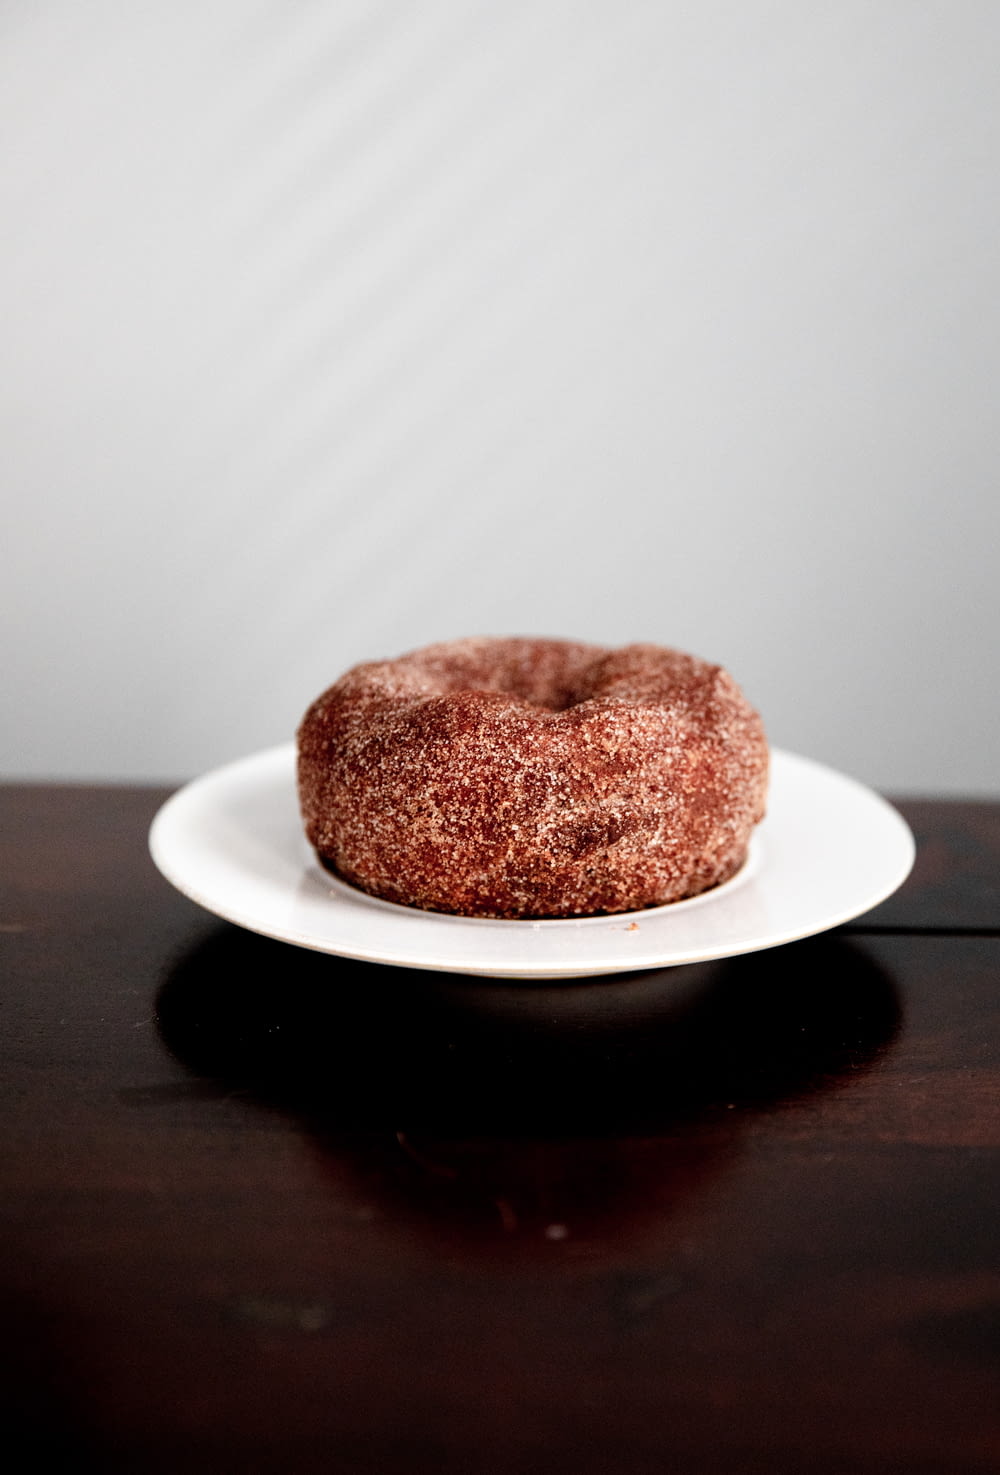 doughnut on white plate